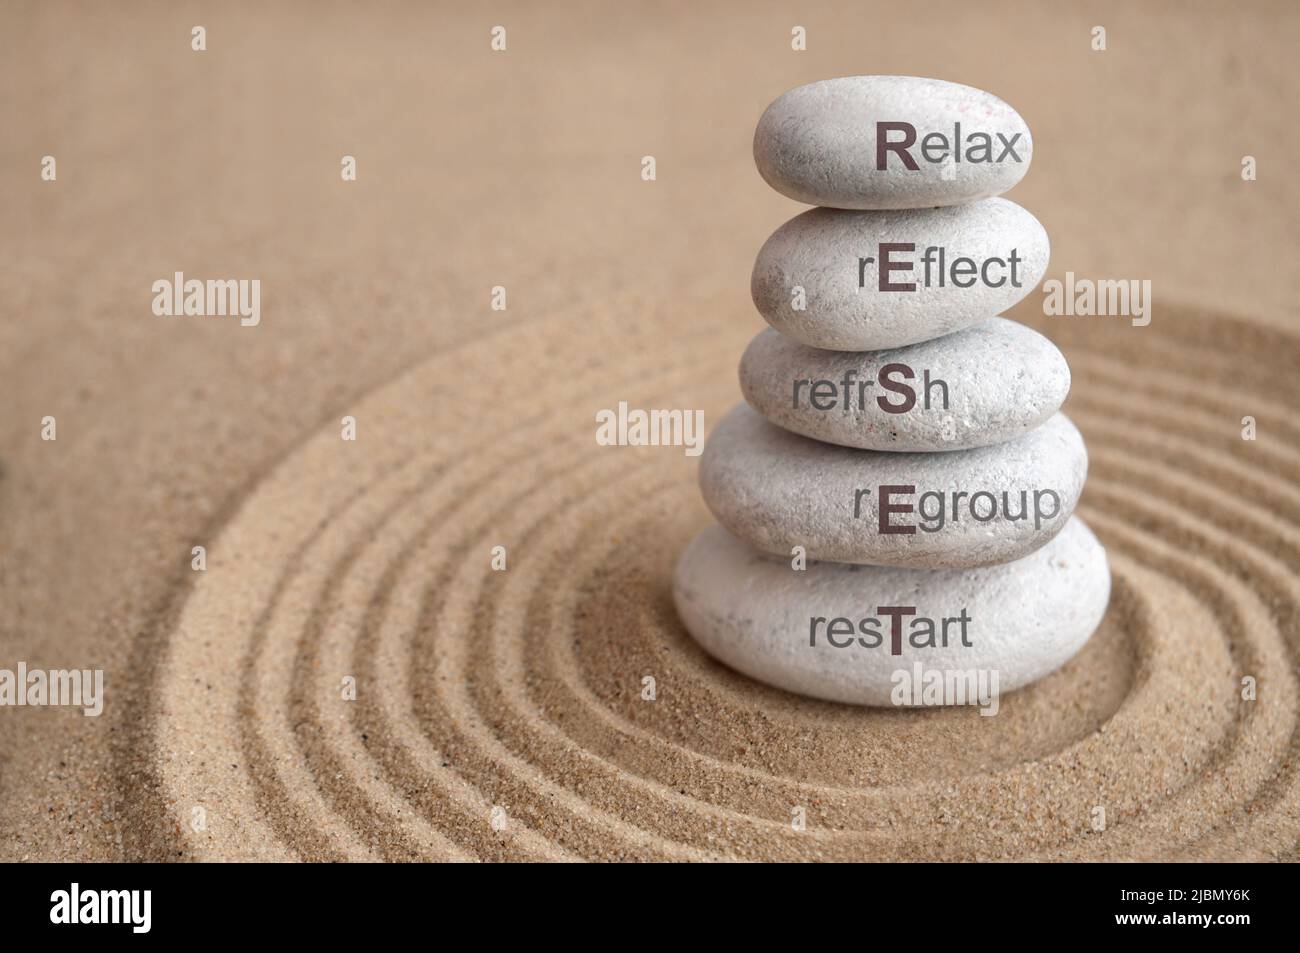 Yoga piedras zen equilibrio restablecer acronymn con los términos asociados incluyendo relajarse y reflexionar Foto de stock